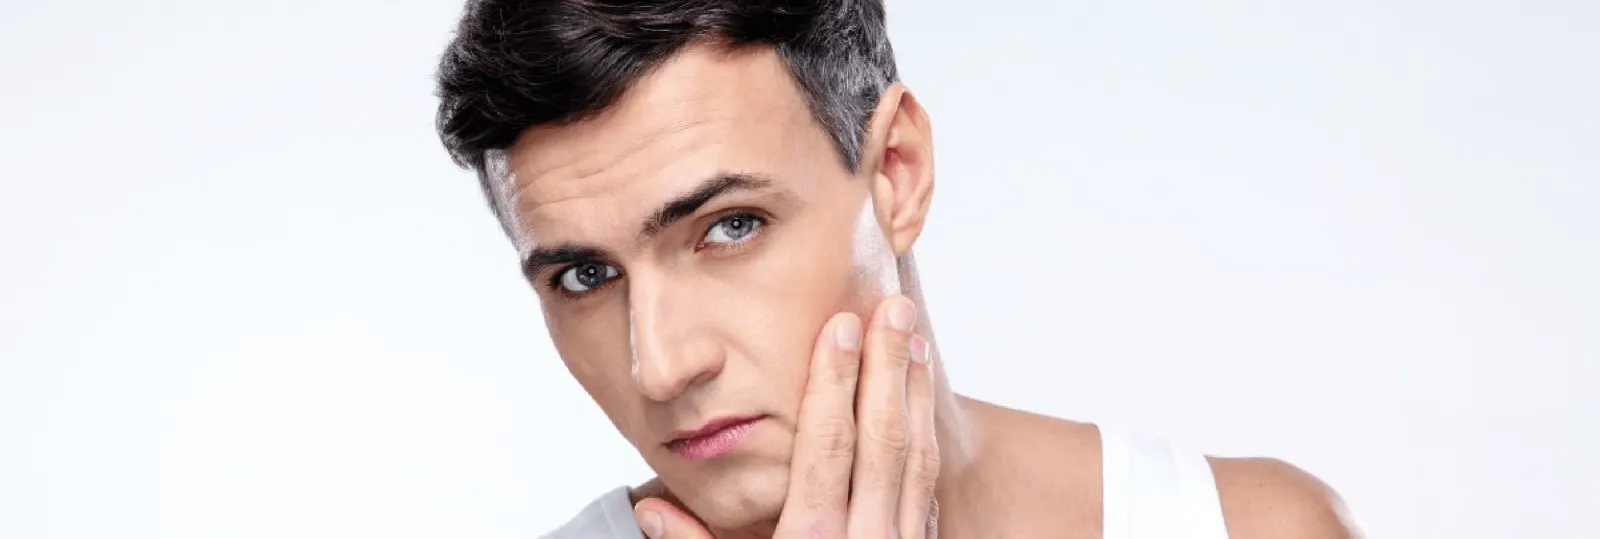 La mejor rutina de cuidado de la piel para hombres - Guía Gillette